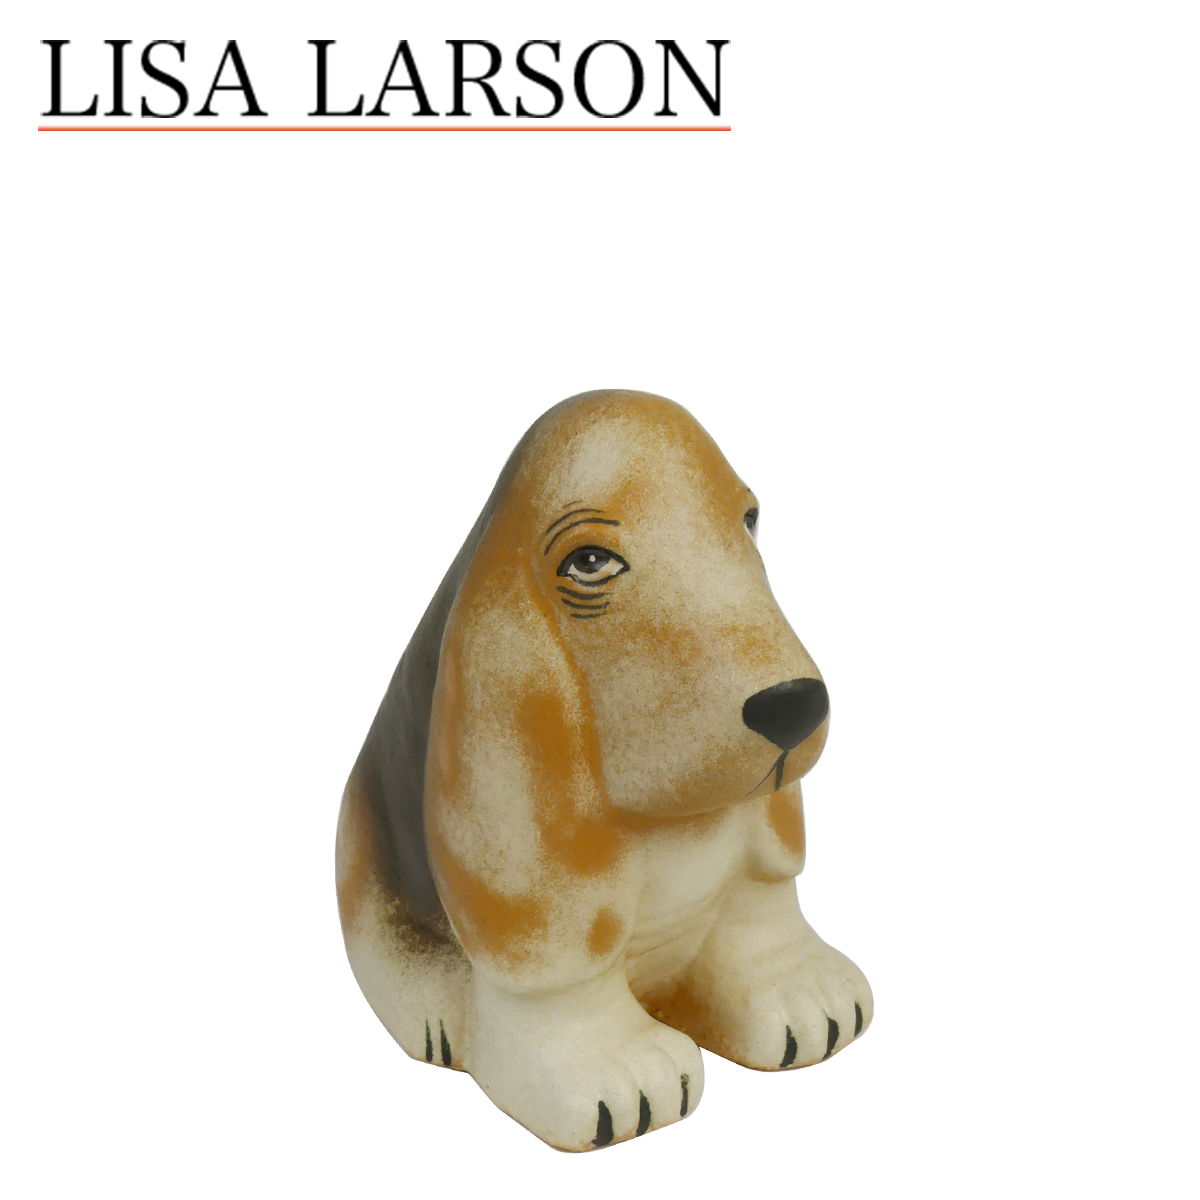 楽天市場 ポイント5倍 10 25 置物リサ ラーソン リサラーソン ケンネル バセット 動物 Lisalarson Lisa Larson Kennel Basset バセットハウンド 犬 陶器 北欧 オブジェ Daily 3